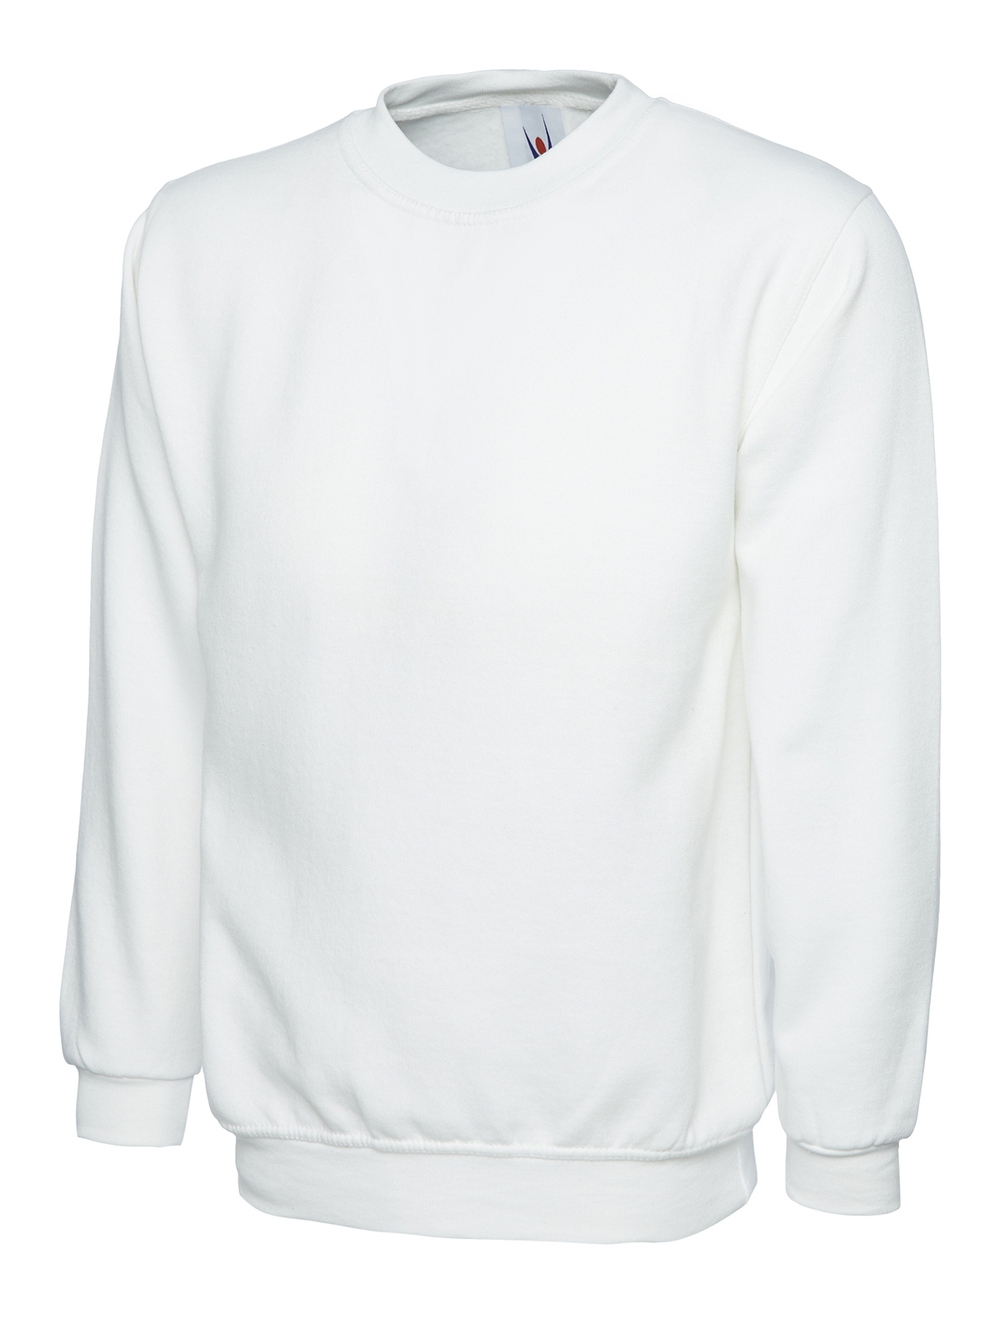 Whitesweatshirt